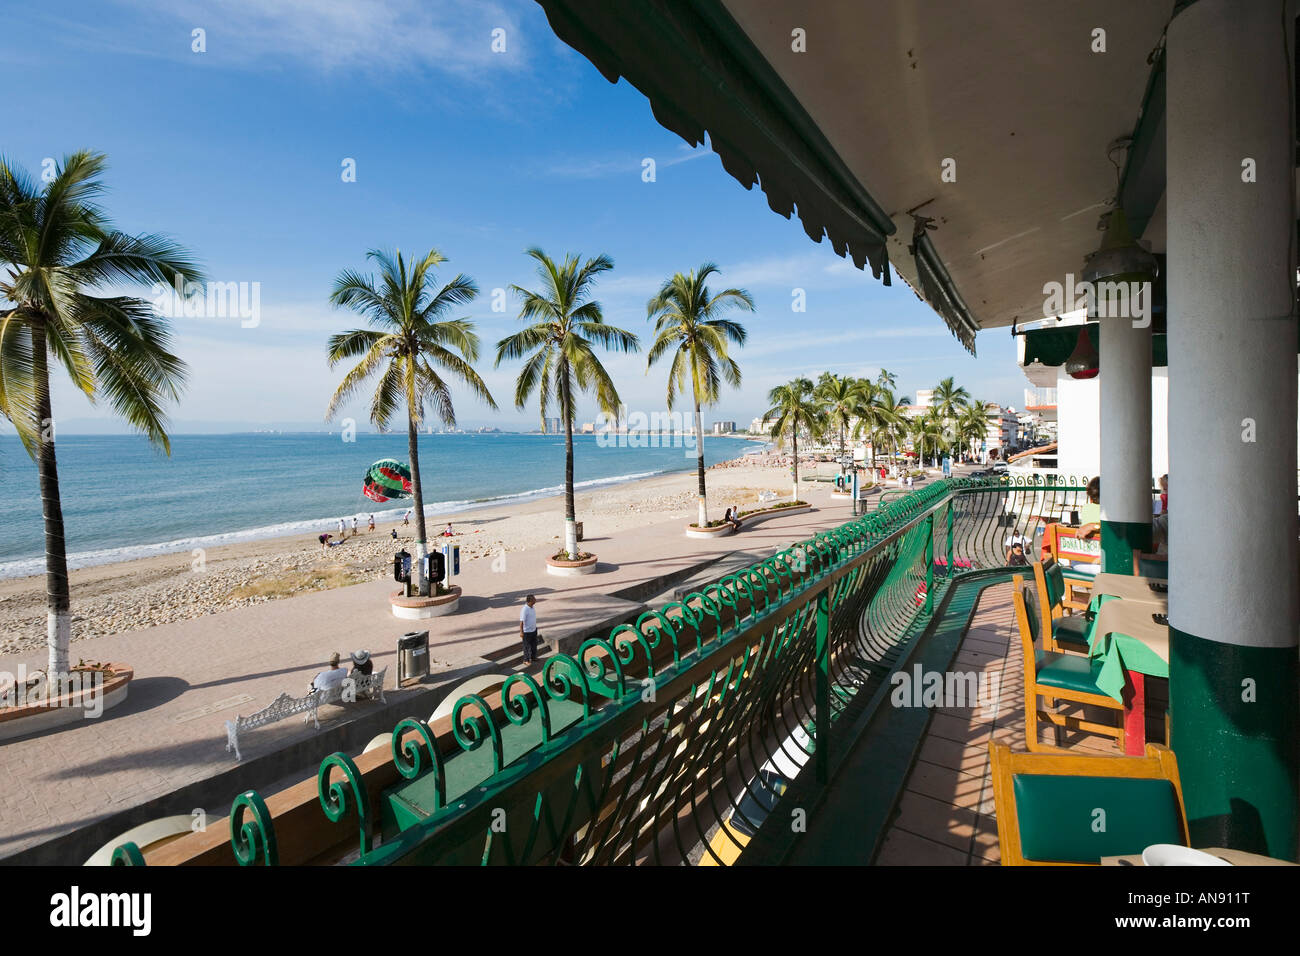 Vue depuis la terrasse de restaurant en bord de mer, le Malecon, vieille ville, Puerto Vallarta, Jalisco, Mexique Banque D'Images